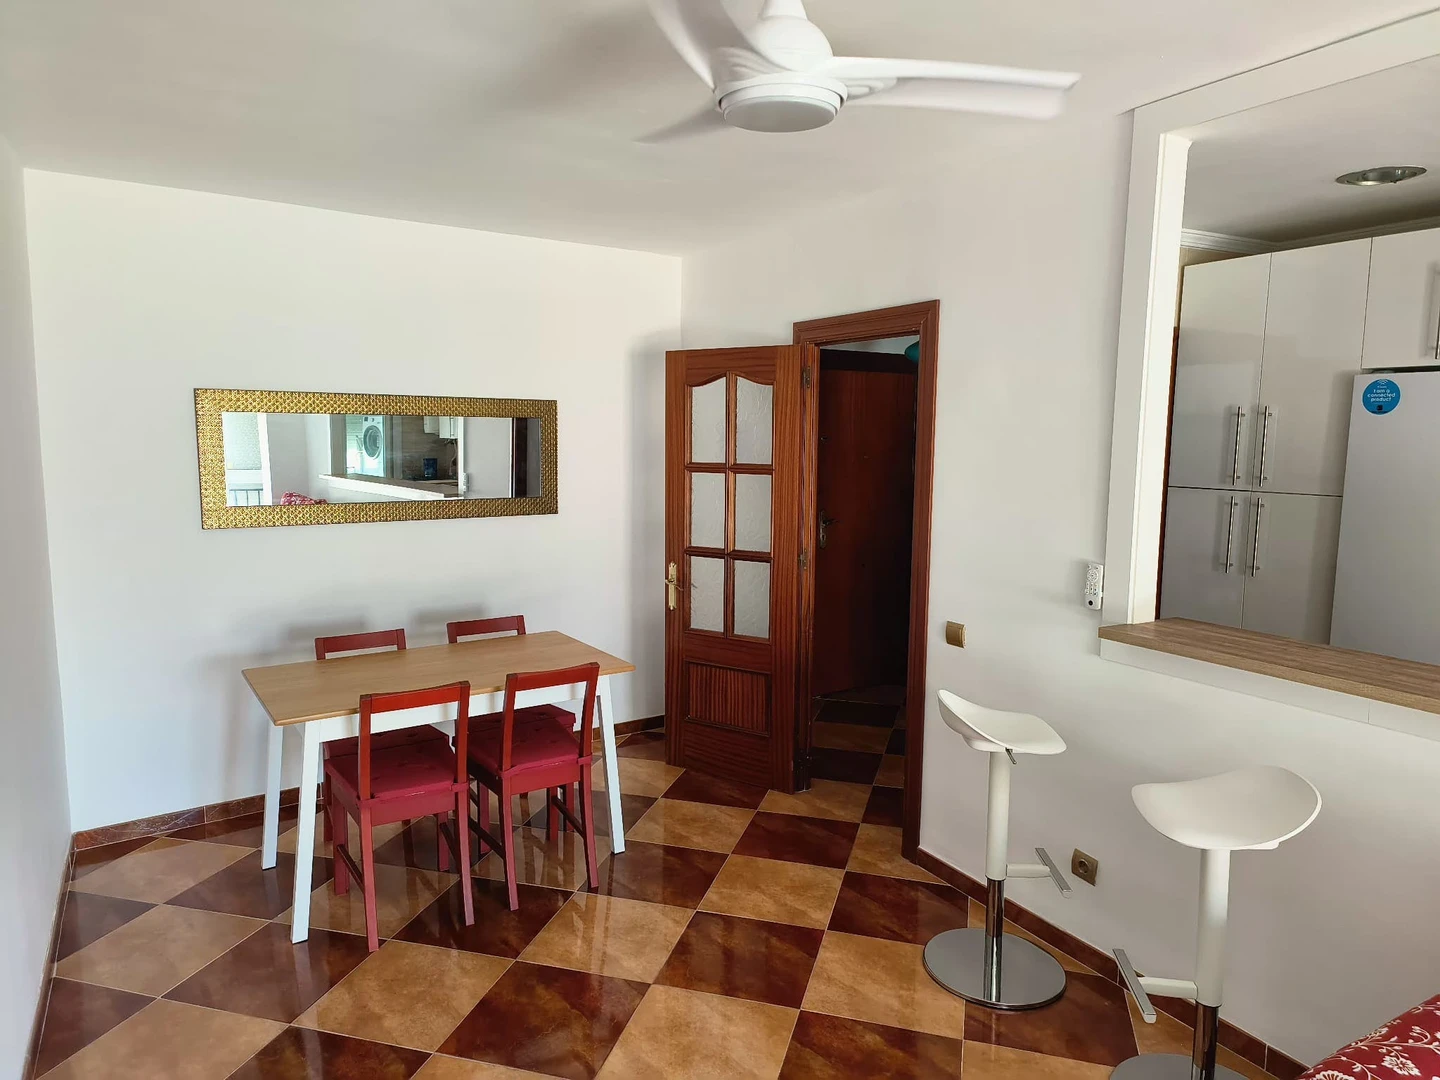 Luminosa stanza condivisa in affitto a Malaga